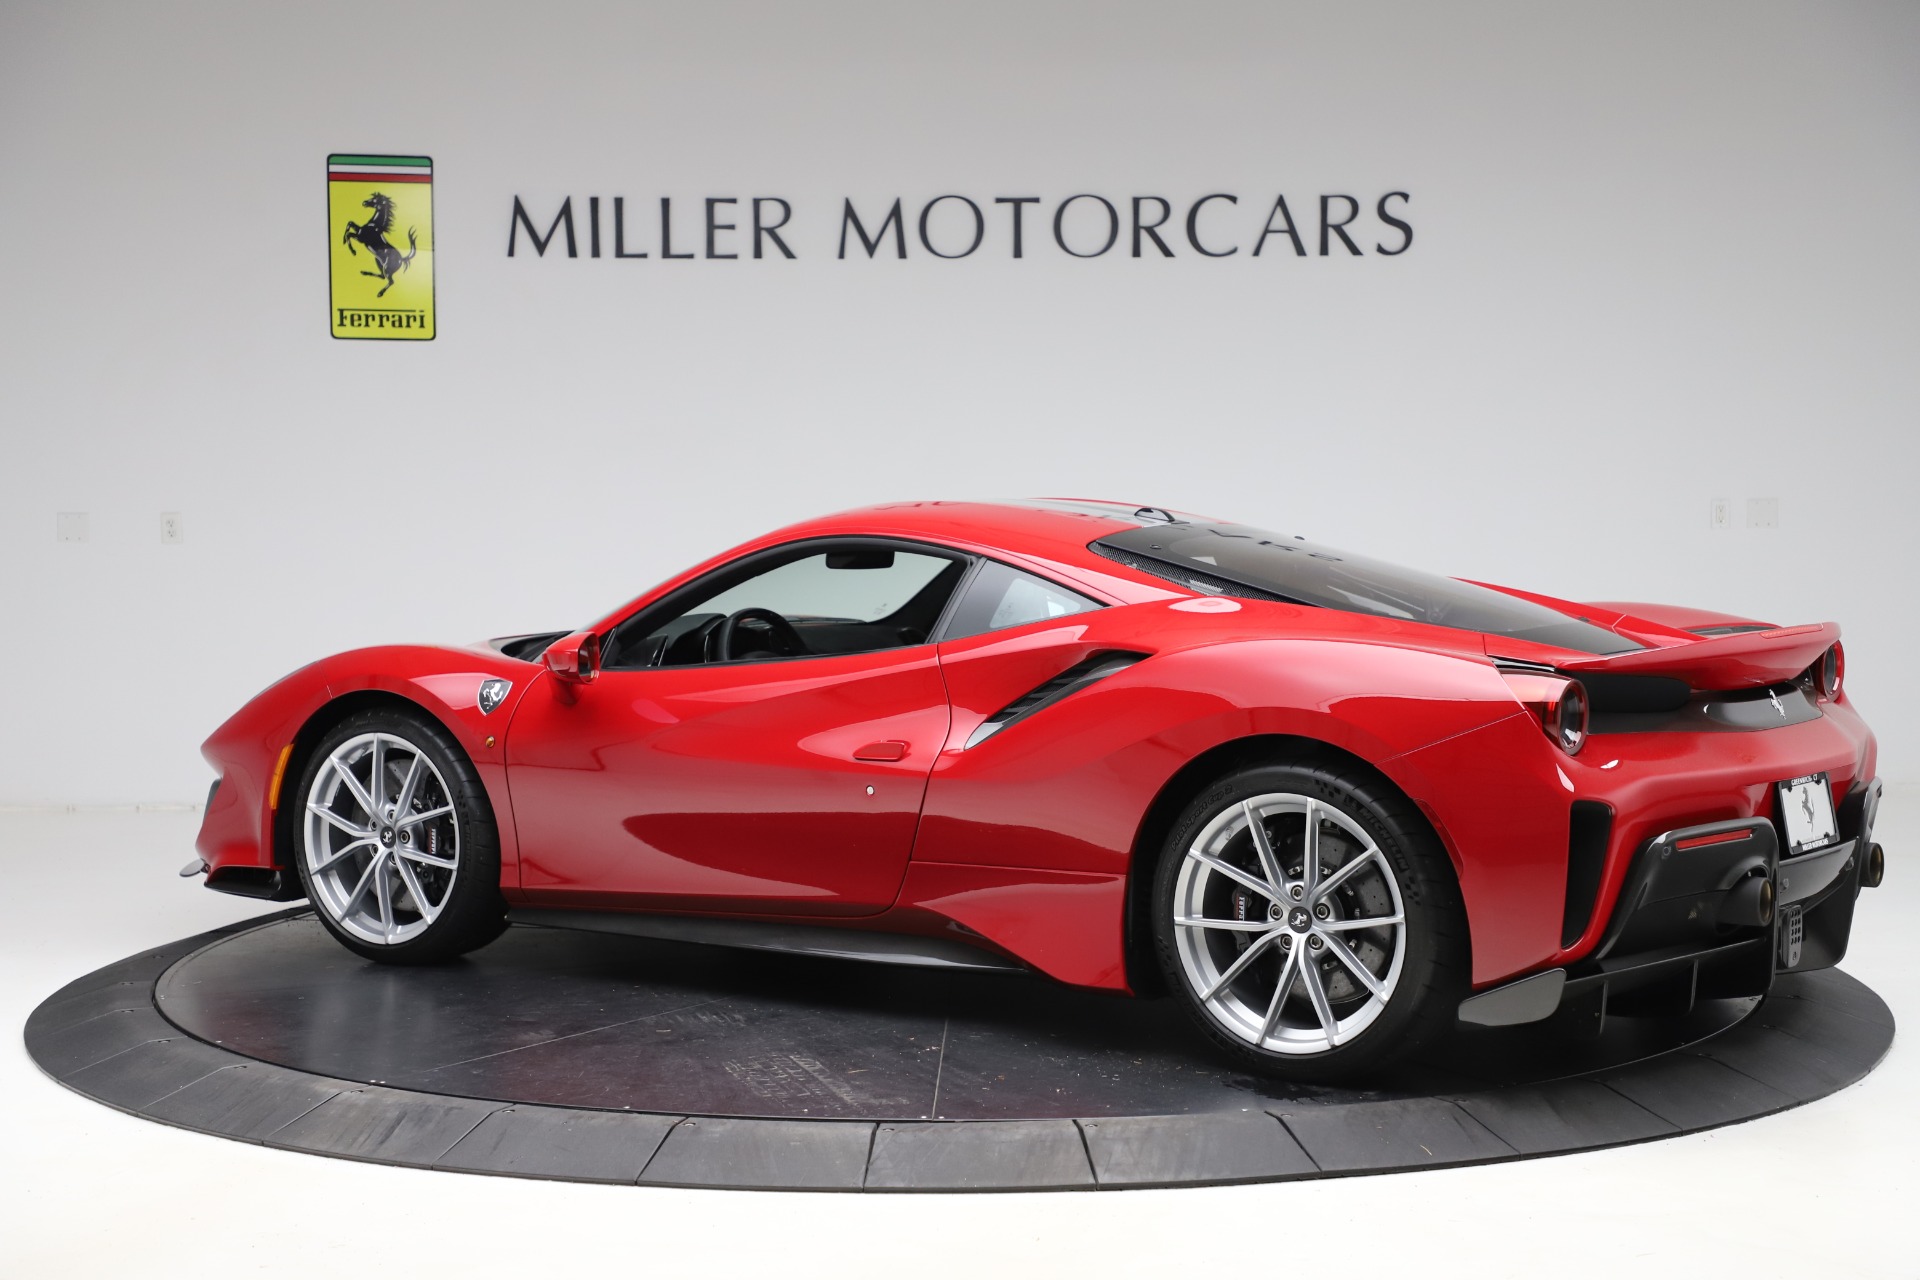 Pre-Owned 2020 Ferrari 488 Pista For Sale () | Miller Motorcars Stock #4677C